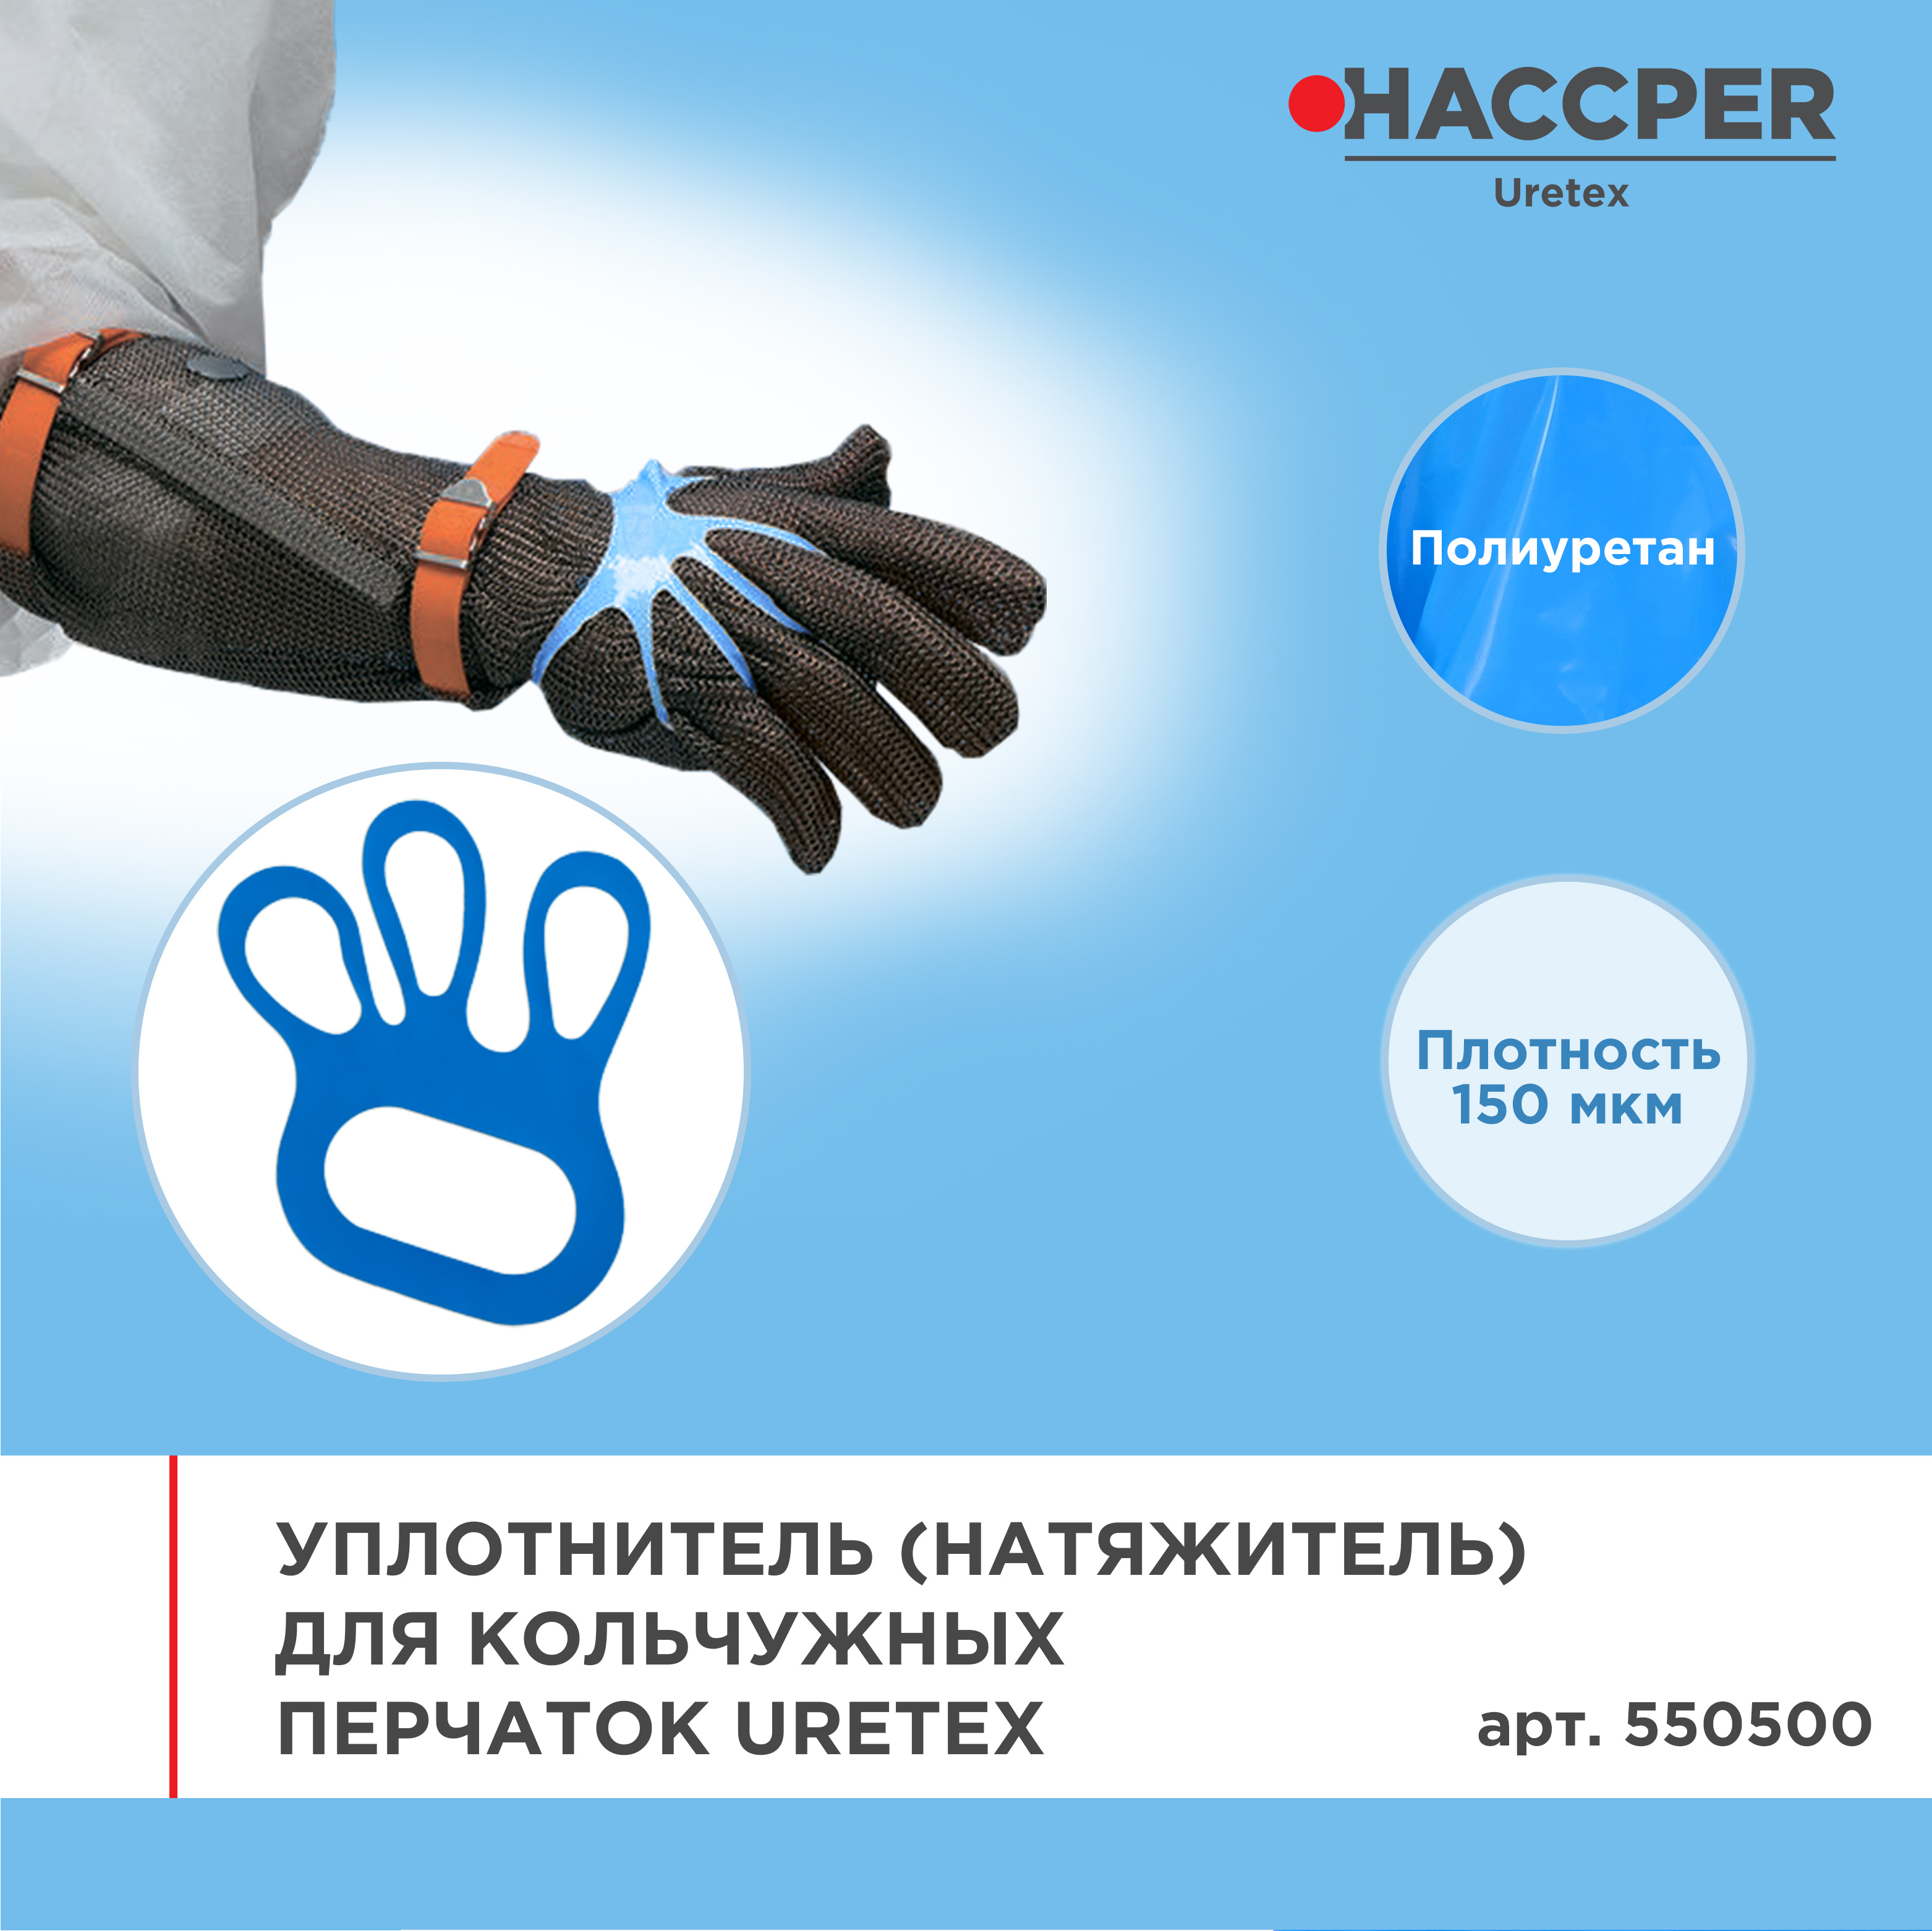 Уплотнитель (натяжитель) для кольчужных перчаток HACCPER Uretex, синий, 150 мкм, 100 шт/кор